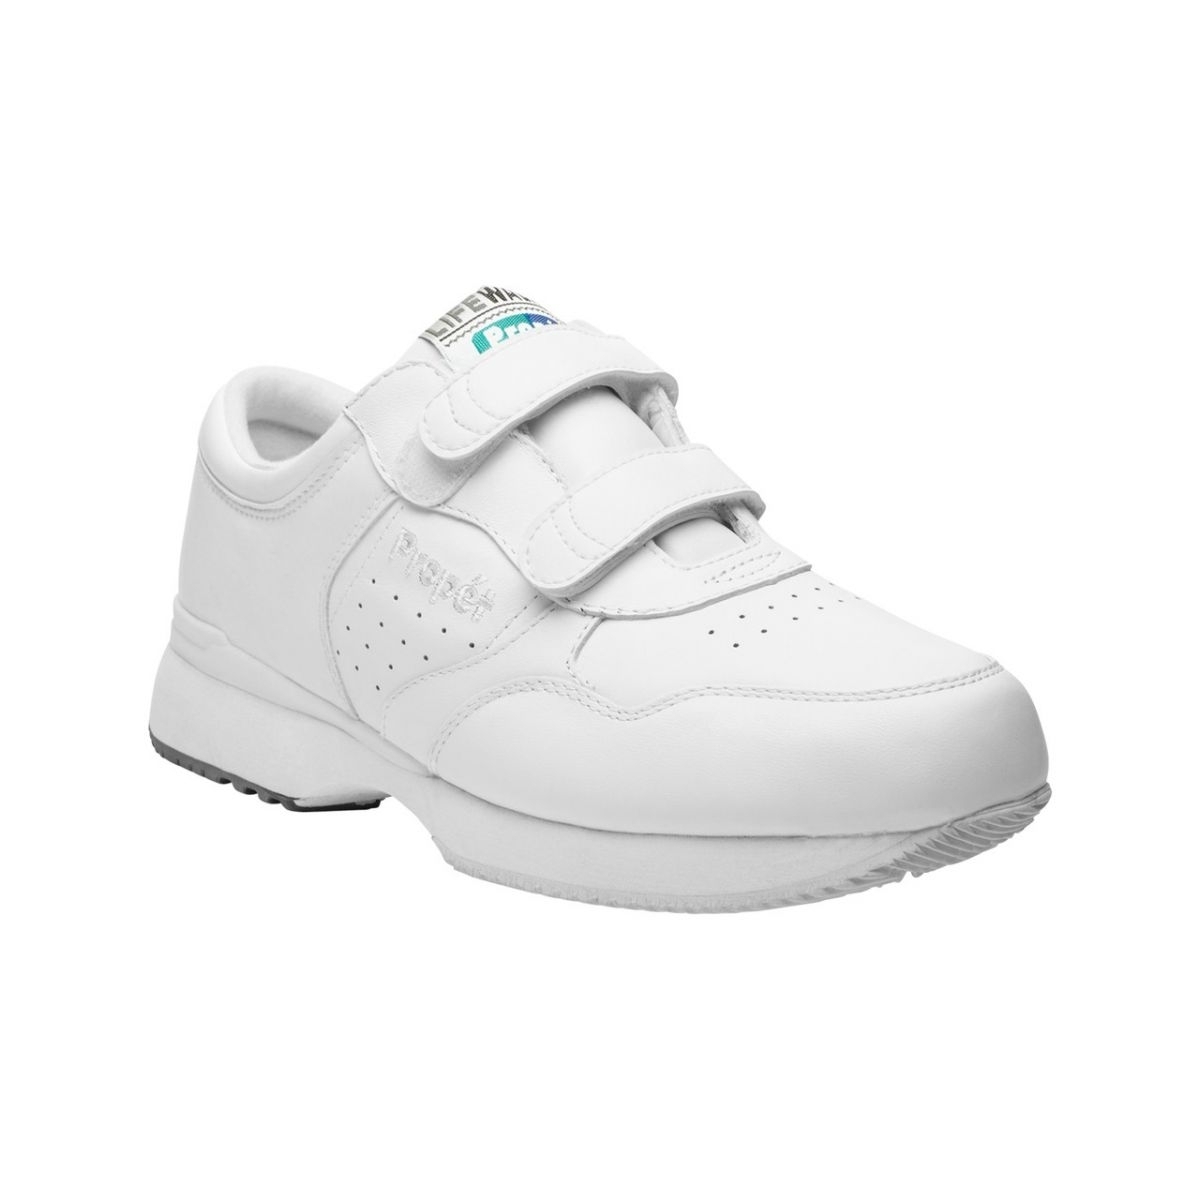 Propet Men's Life Walker Strap Shoe White - M3705WHT WHITE - WHITE, 12 X-Wide